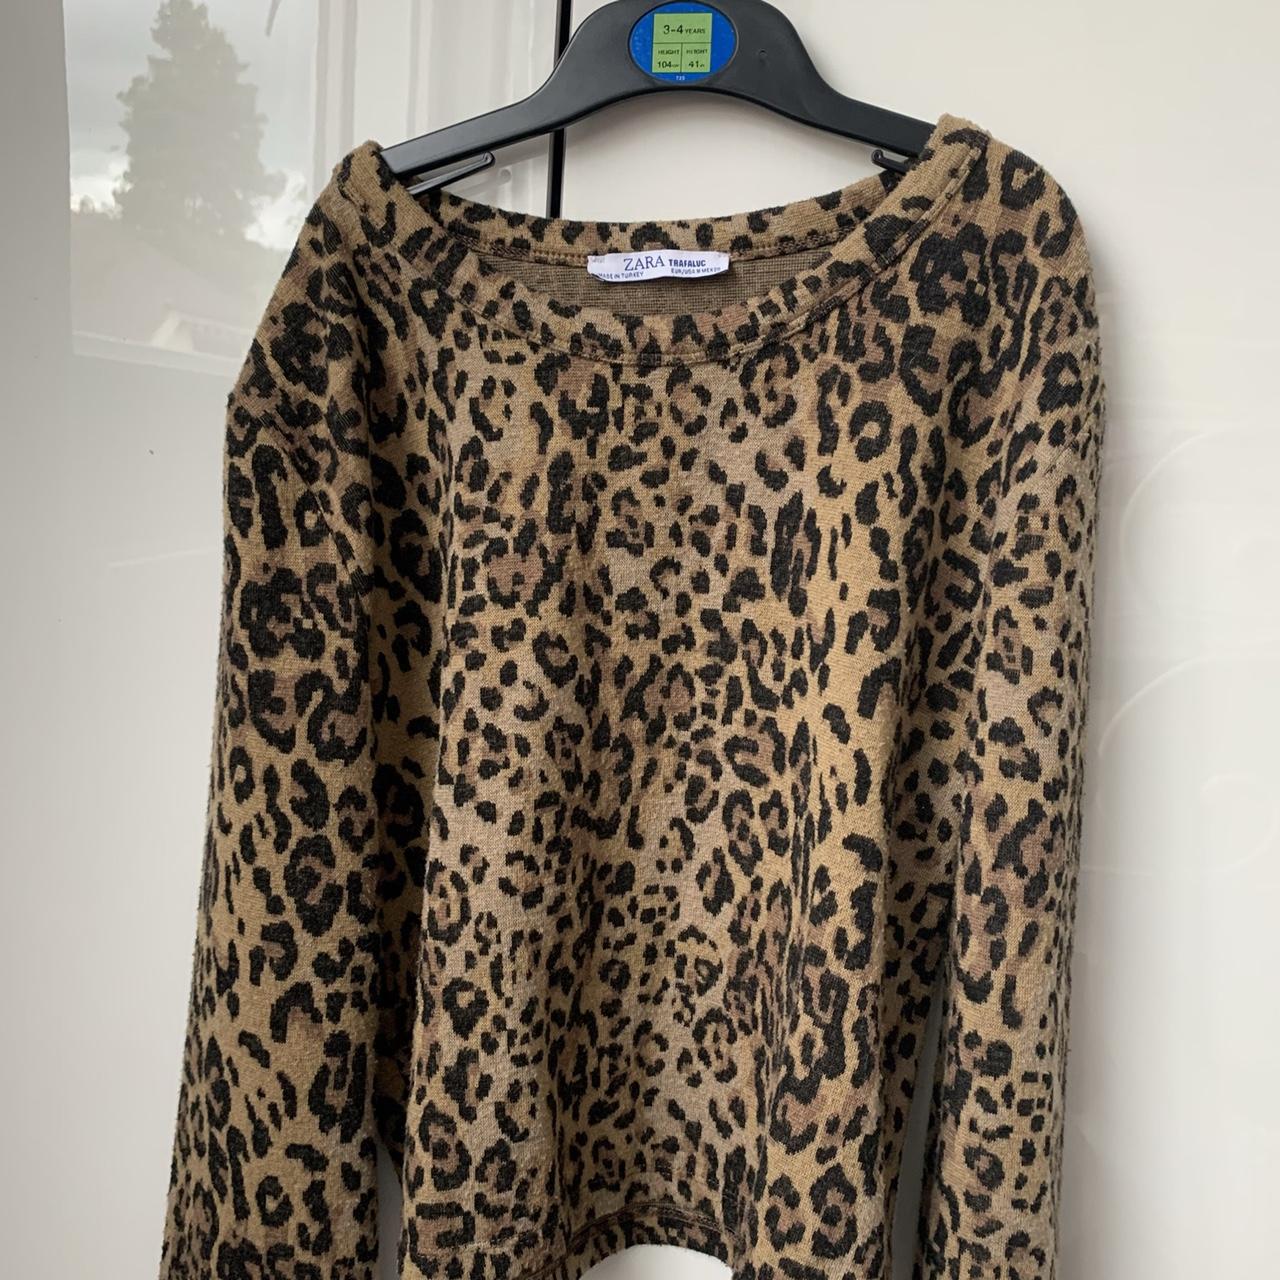 Zara cheetah print woollen long sleeved top x size... - Depop